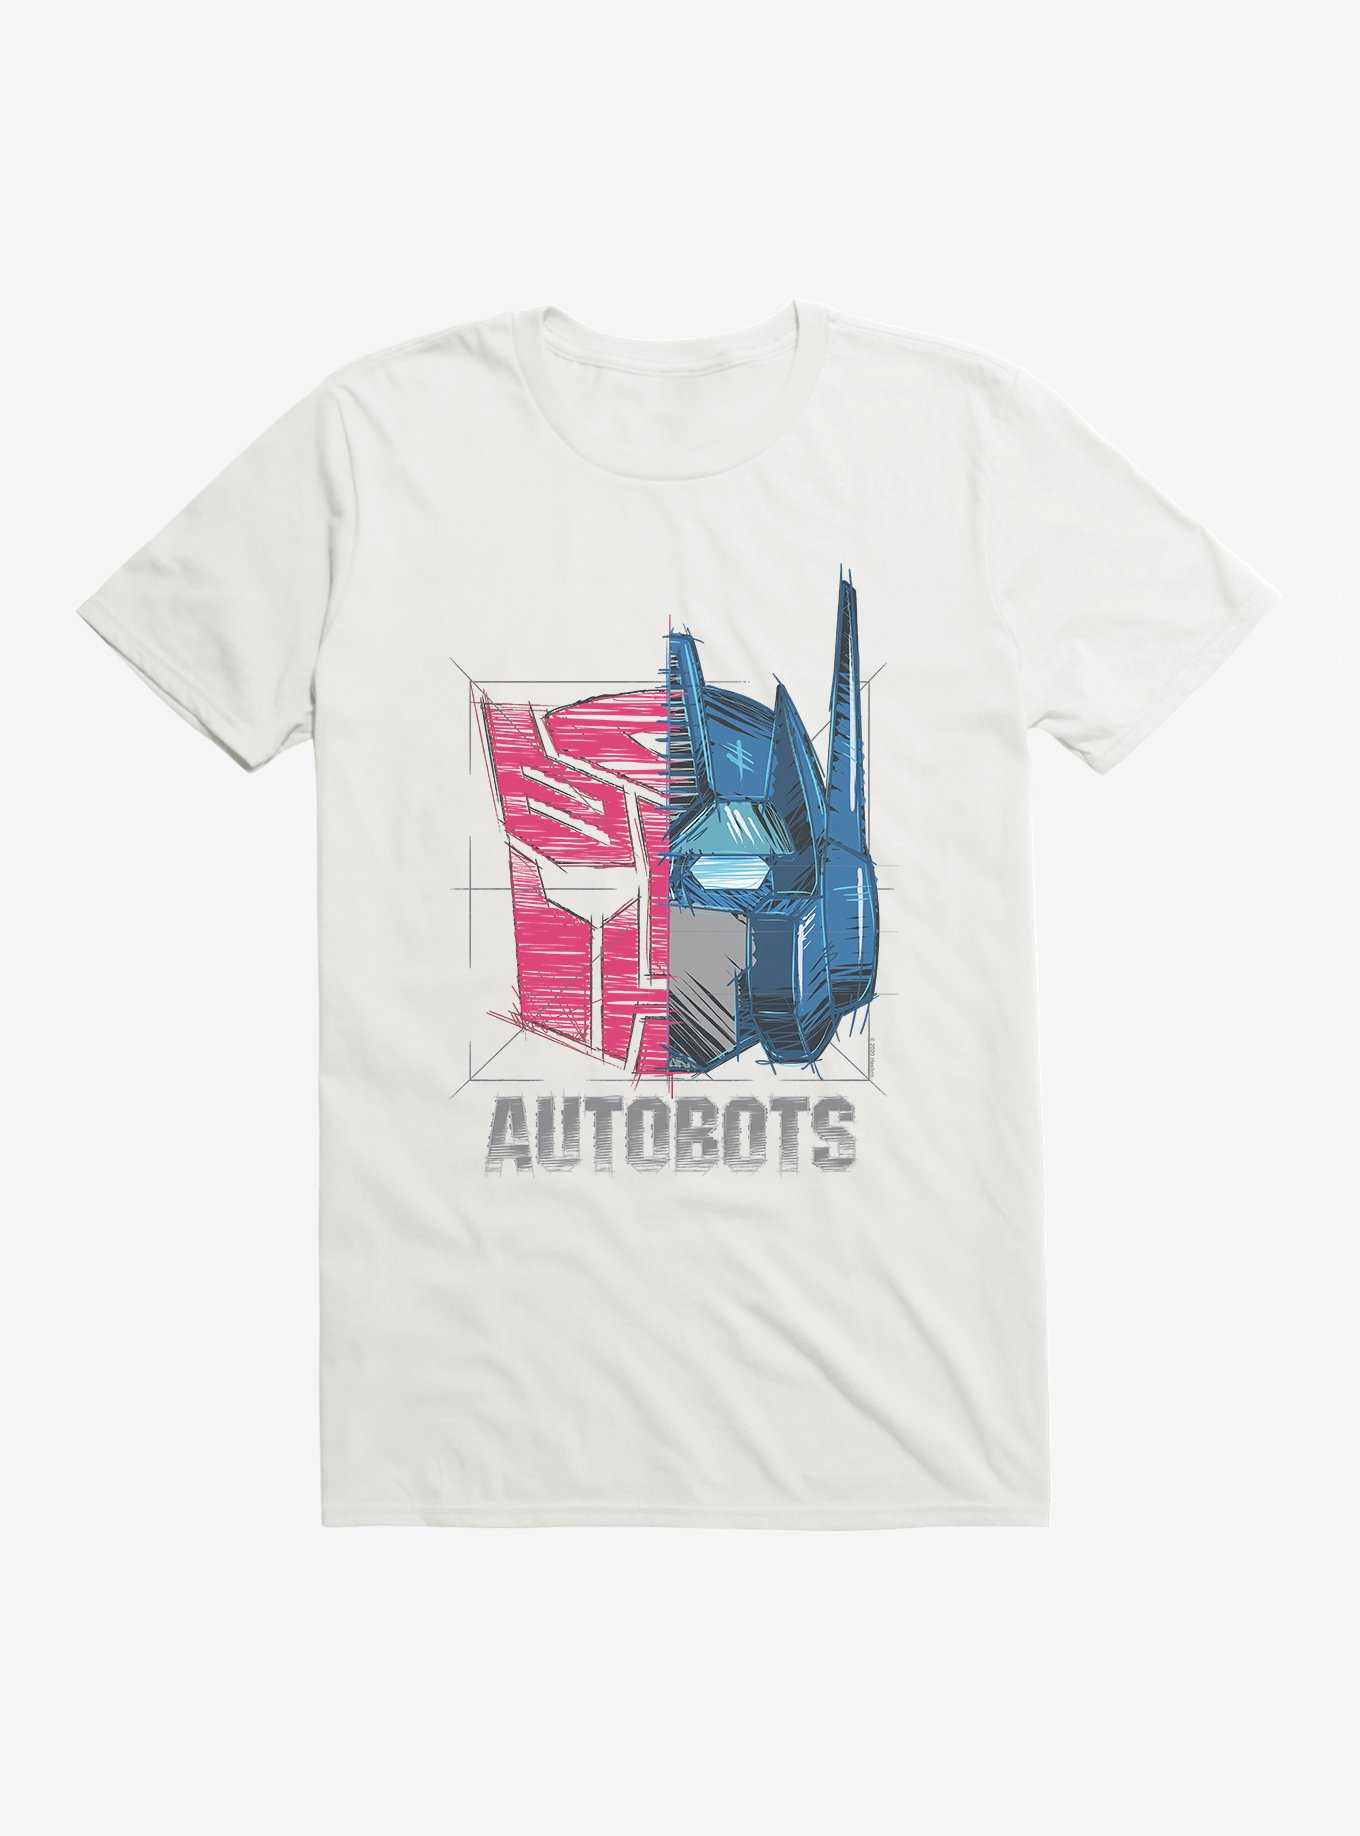 Transformers Autobots Sketch T-Shirt, , hi-res